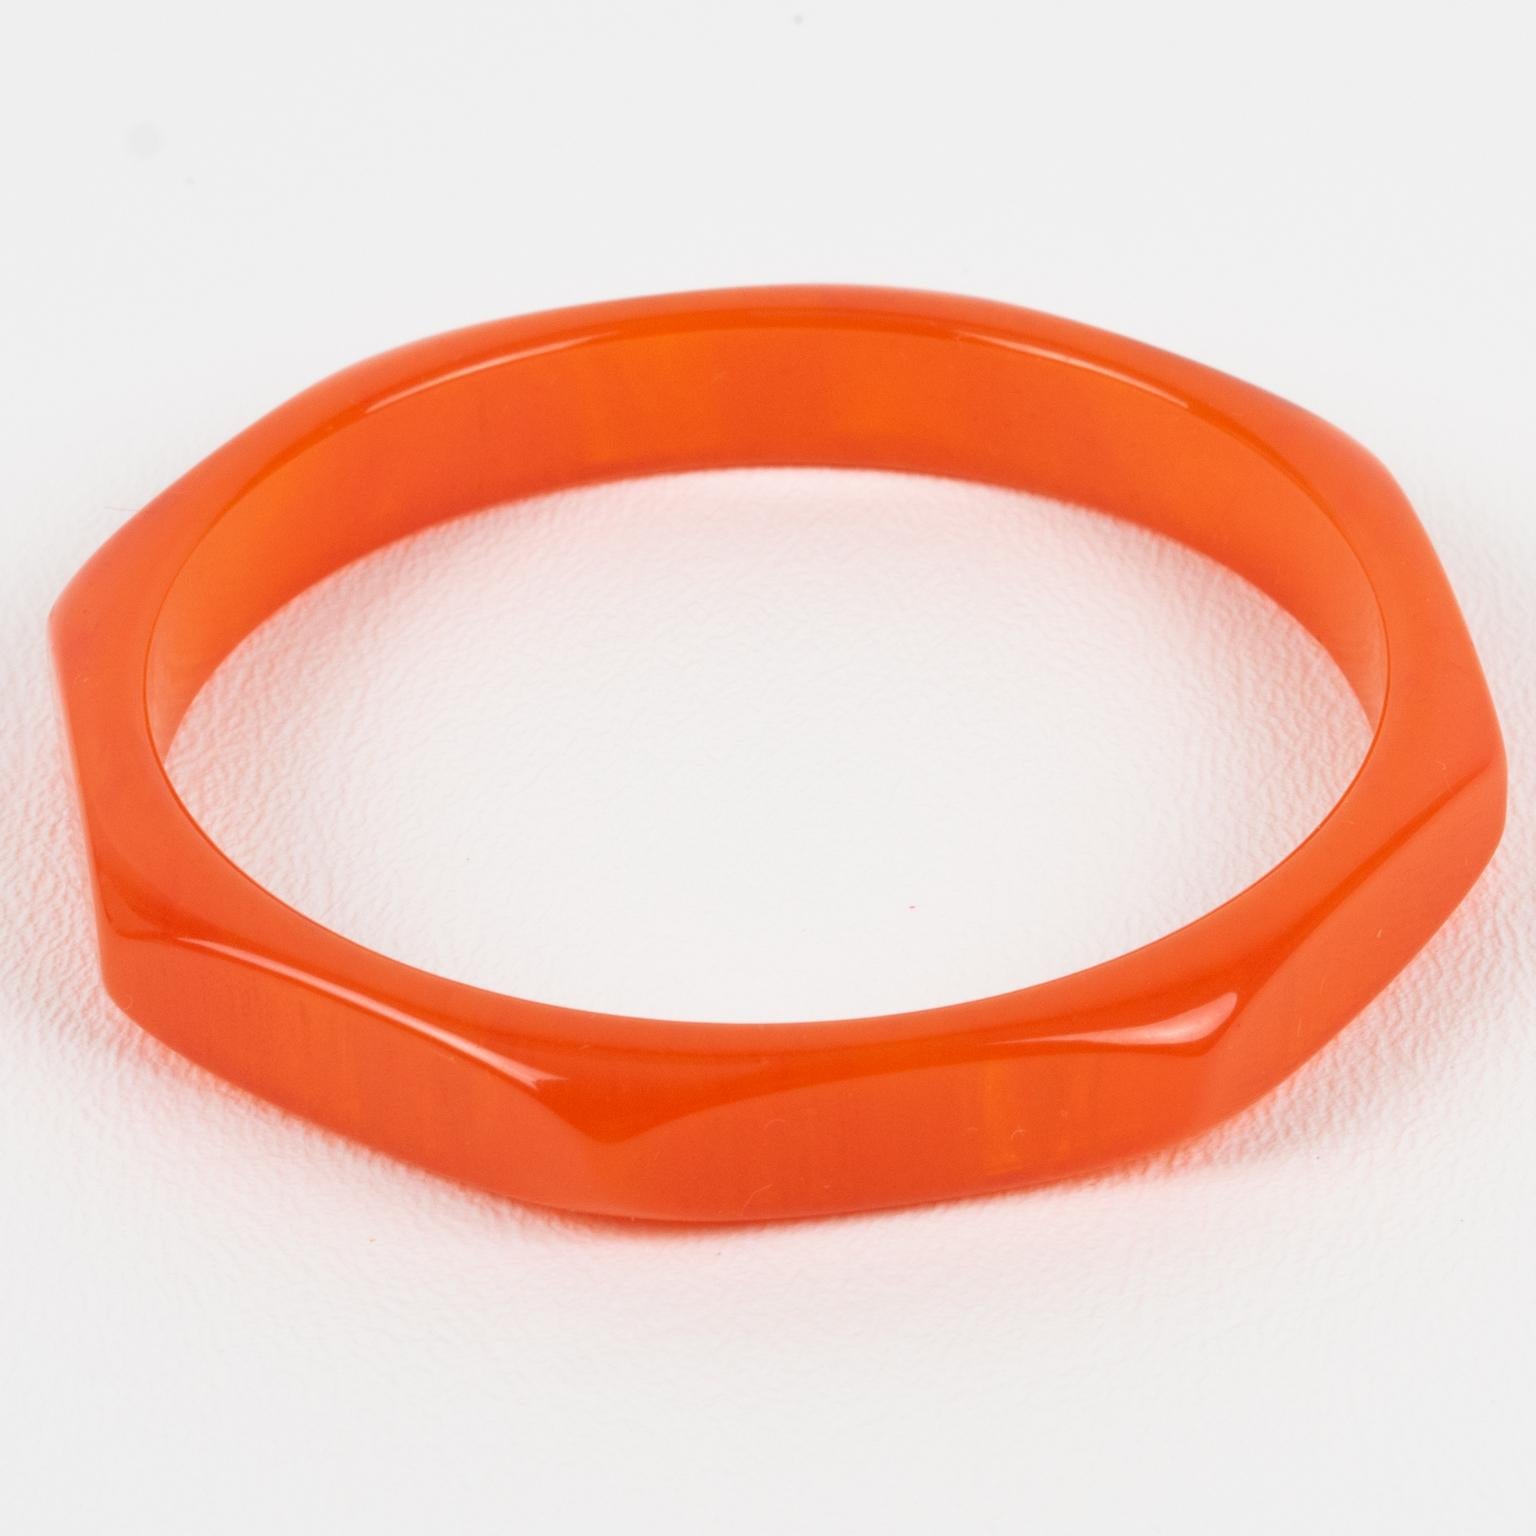 Ce superbe bracelet en bakélite marbrée orange néon a une forme octogonale massive avec un design profondément facetté et sculpté. Il présente une couleur marbrée orange vif intense avec des tourbillons translucides.
Mesures : Diamètre intérieur :